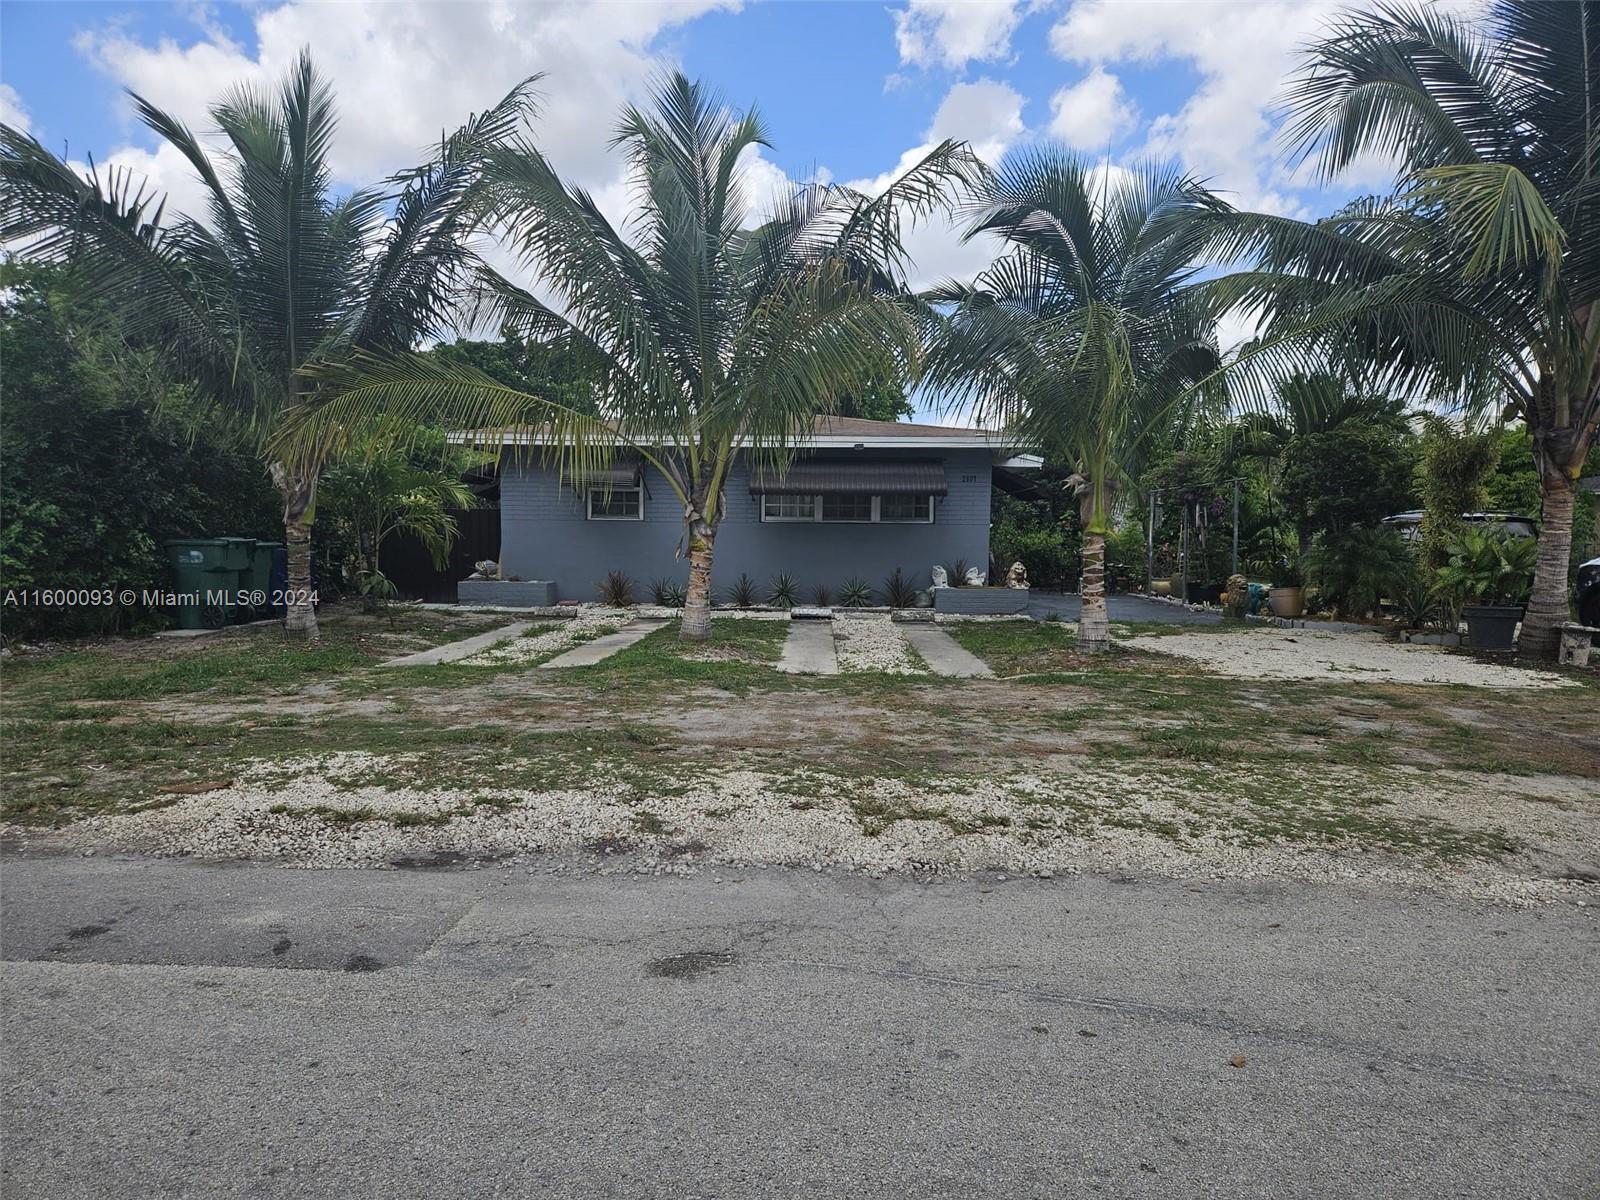 Rental Property at 2803 Nw 91st St St, Miami, Broward County, Florida -  - $870,000 MO.